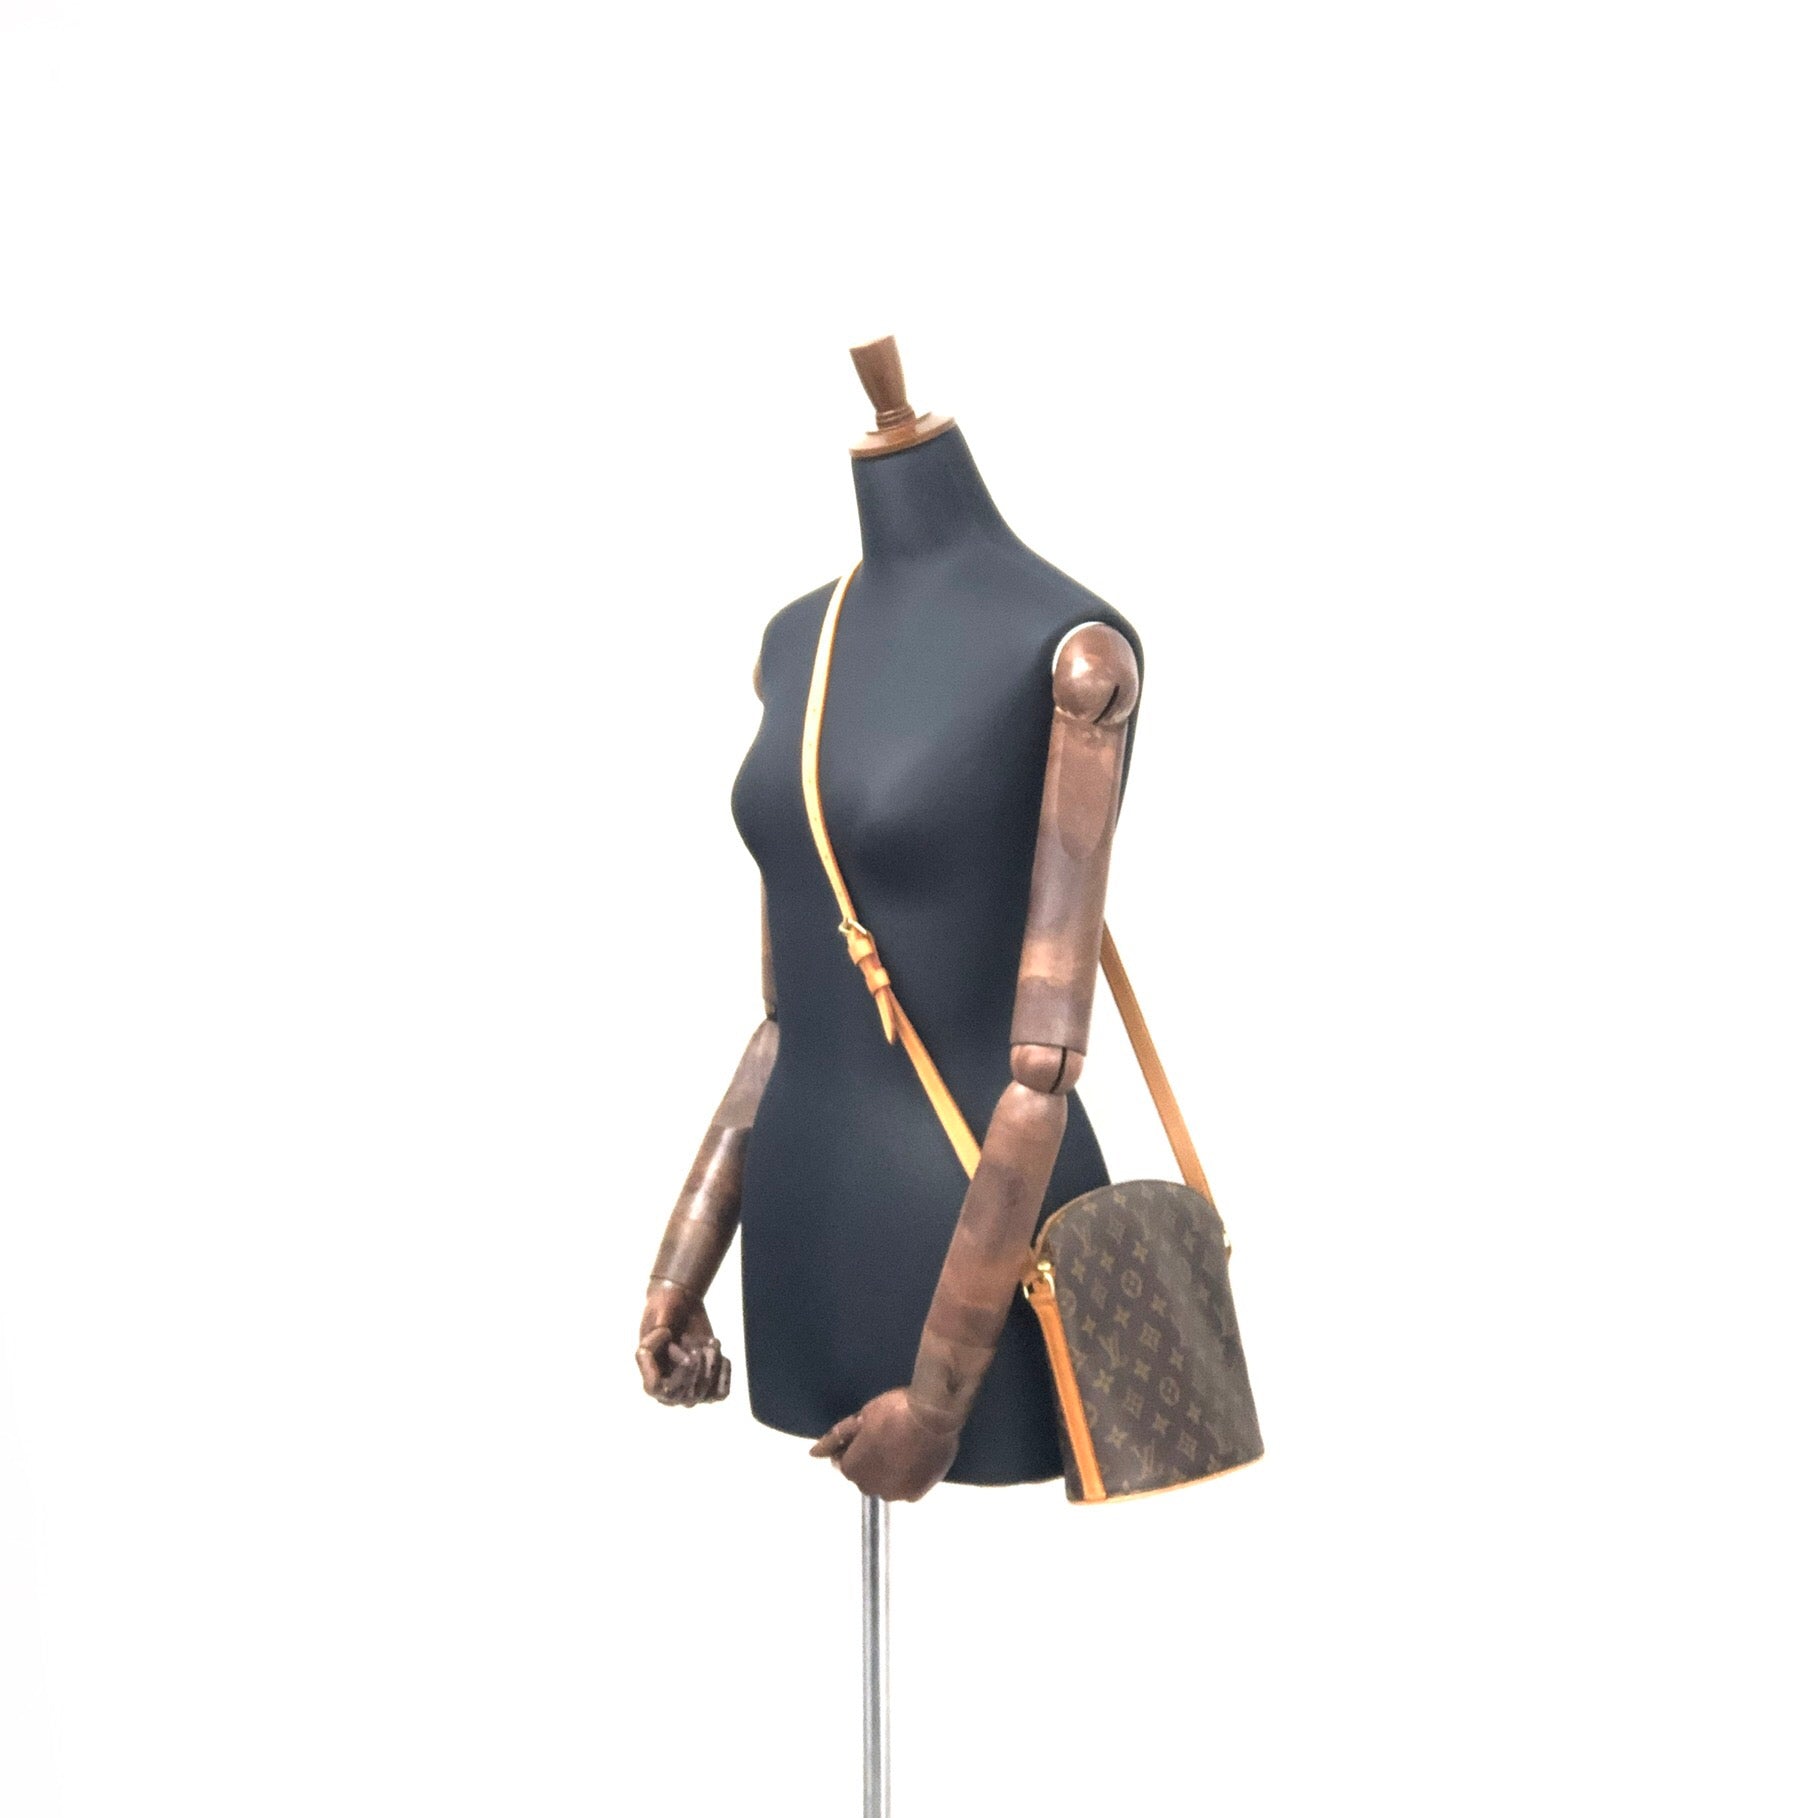 Drouot - Monogram - Bag - Shoulder - Louis Vuitton LV Trainer Crystal -  Body - Louis - M51290 – dct - ep_vintage luxury Store - Vuitton - Cross